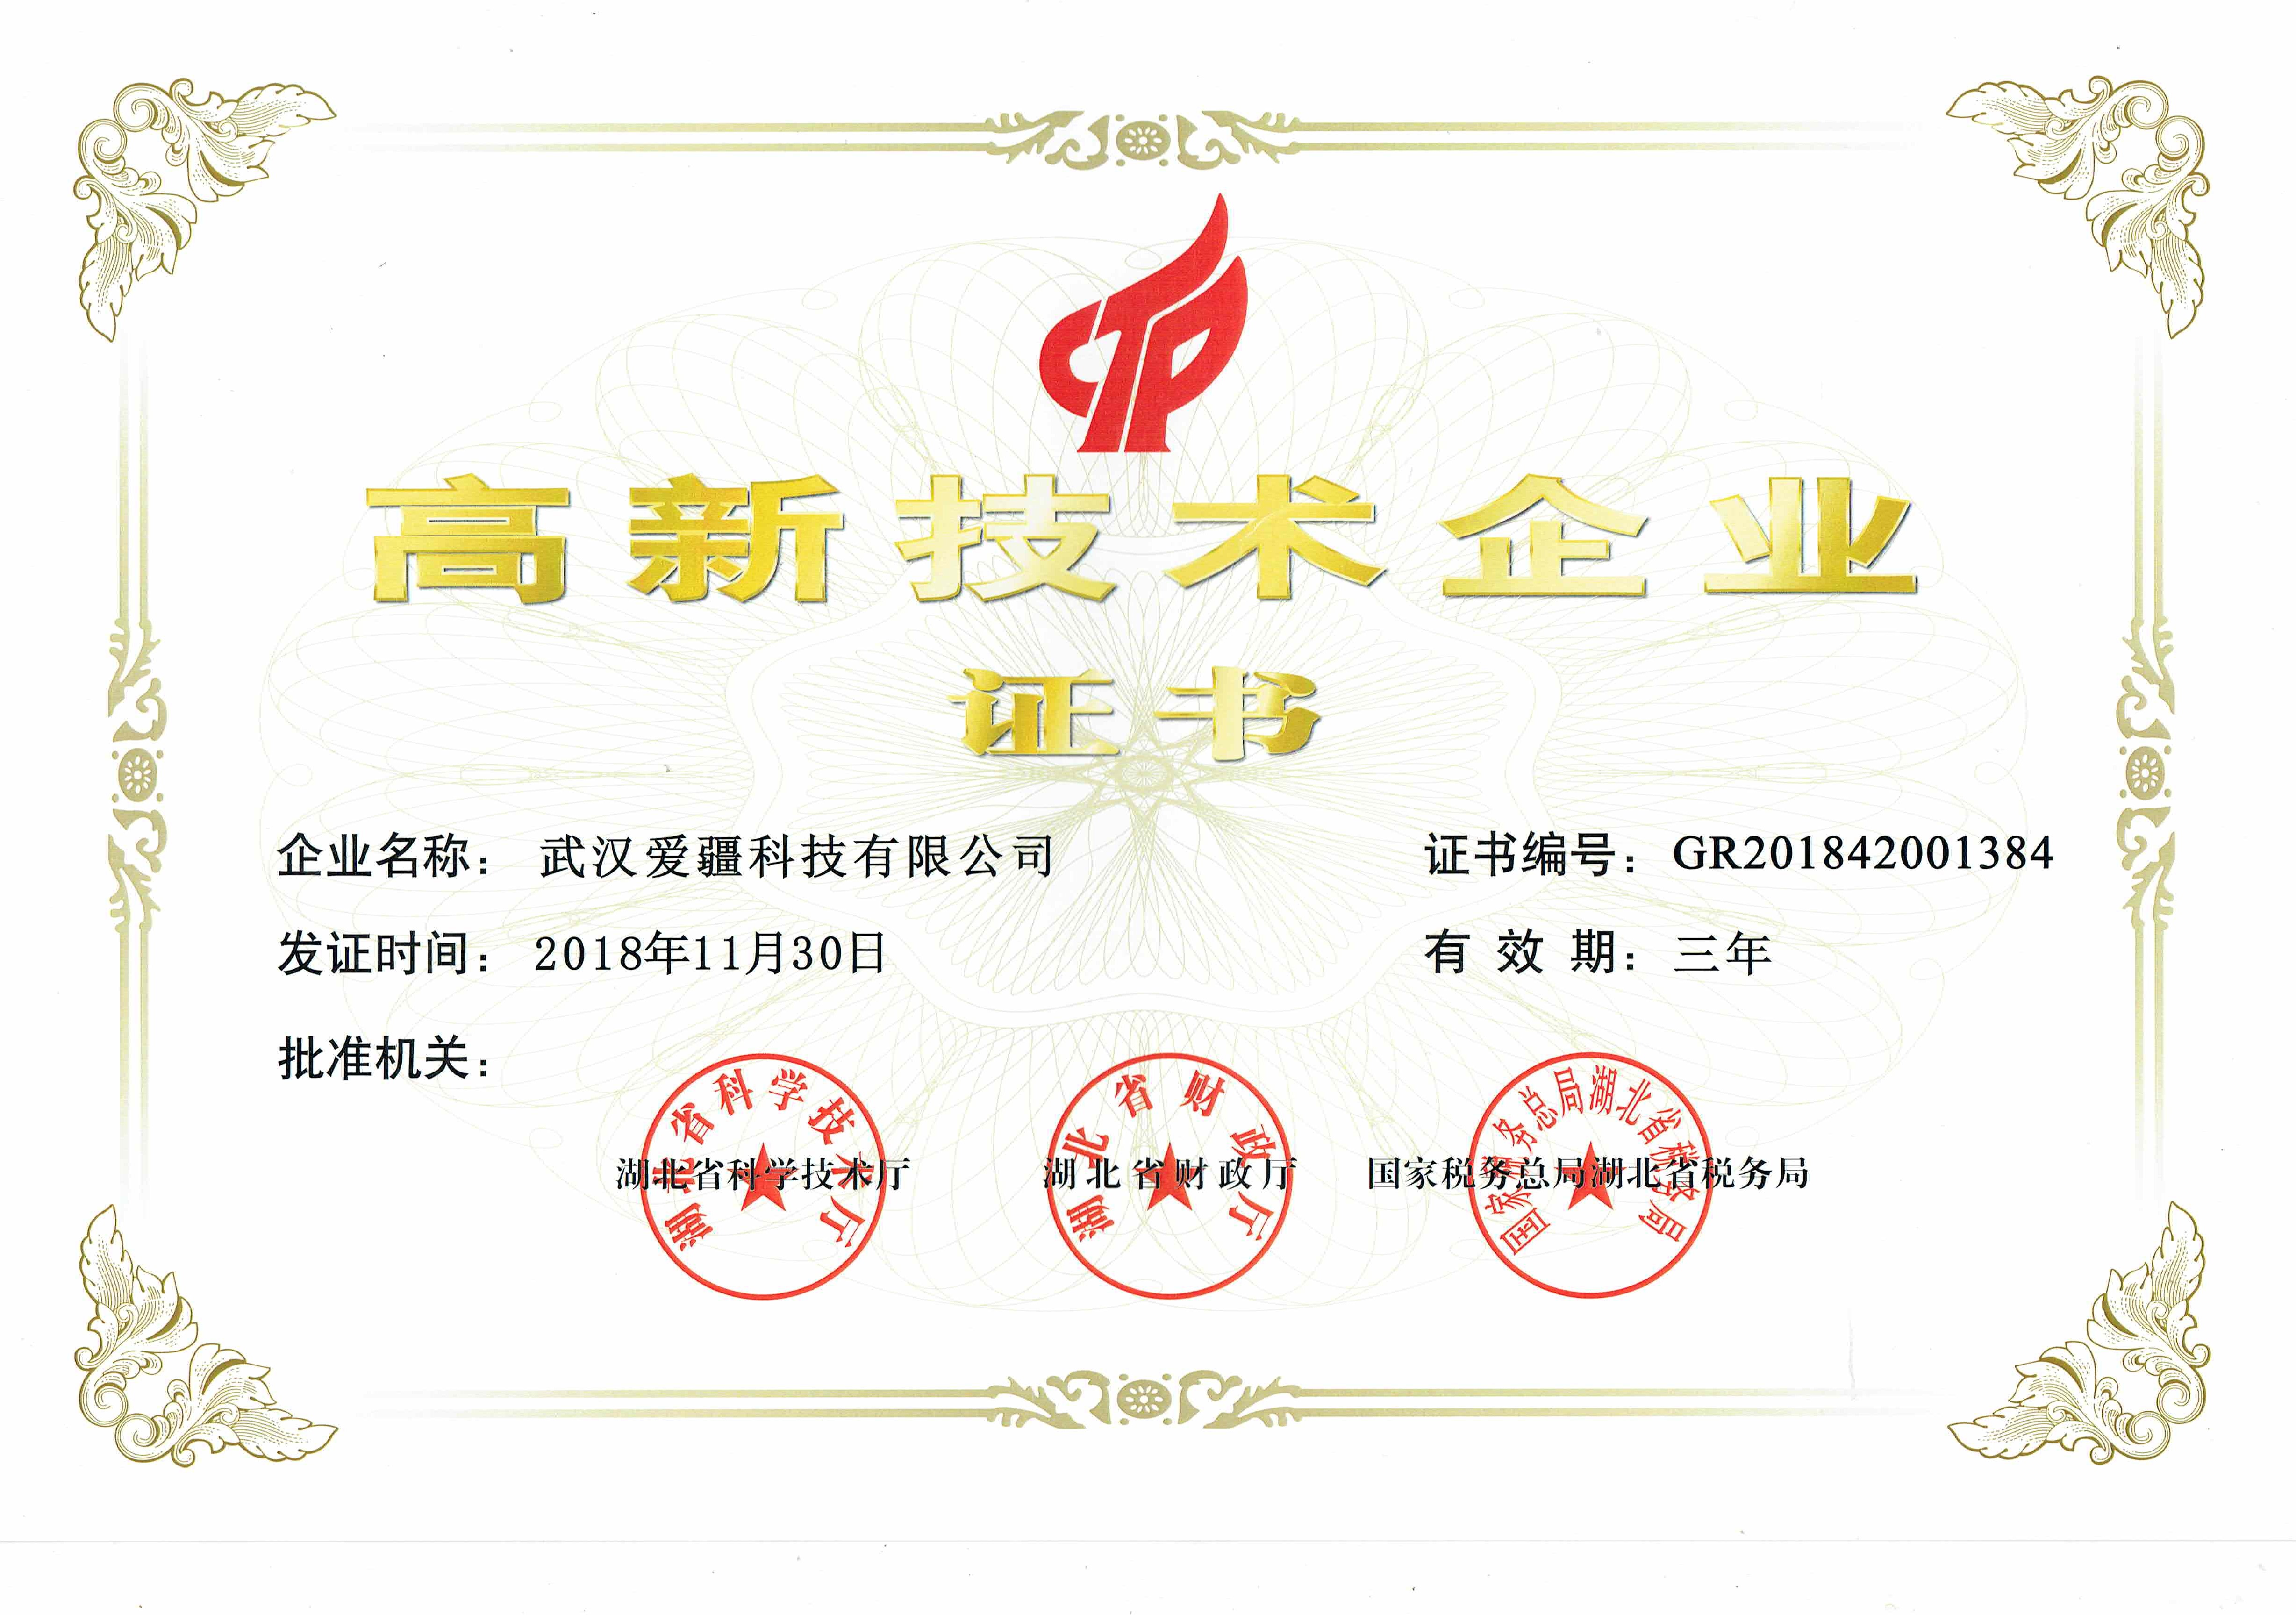 宁波武汉爱疆科技获得 高新技术企业 认证